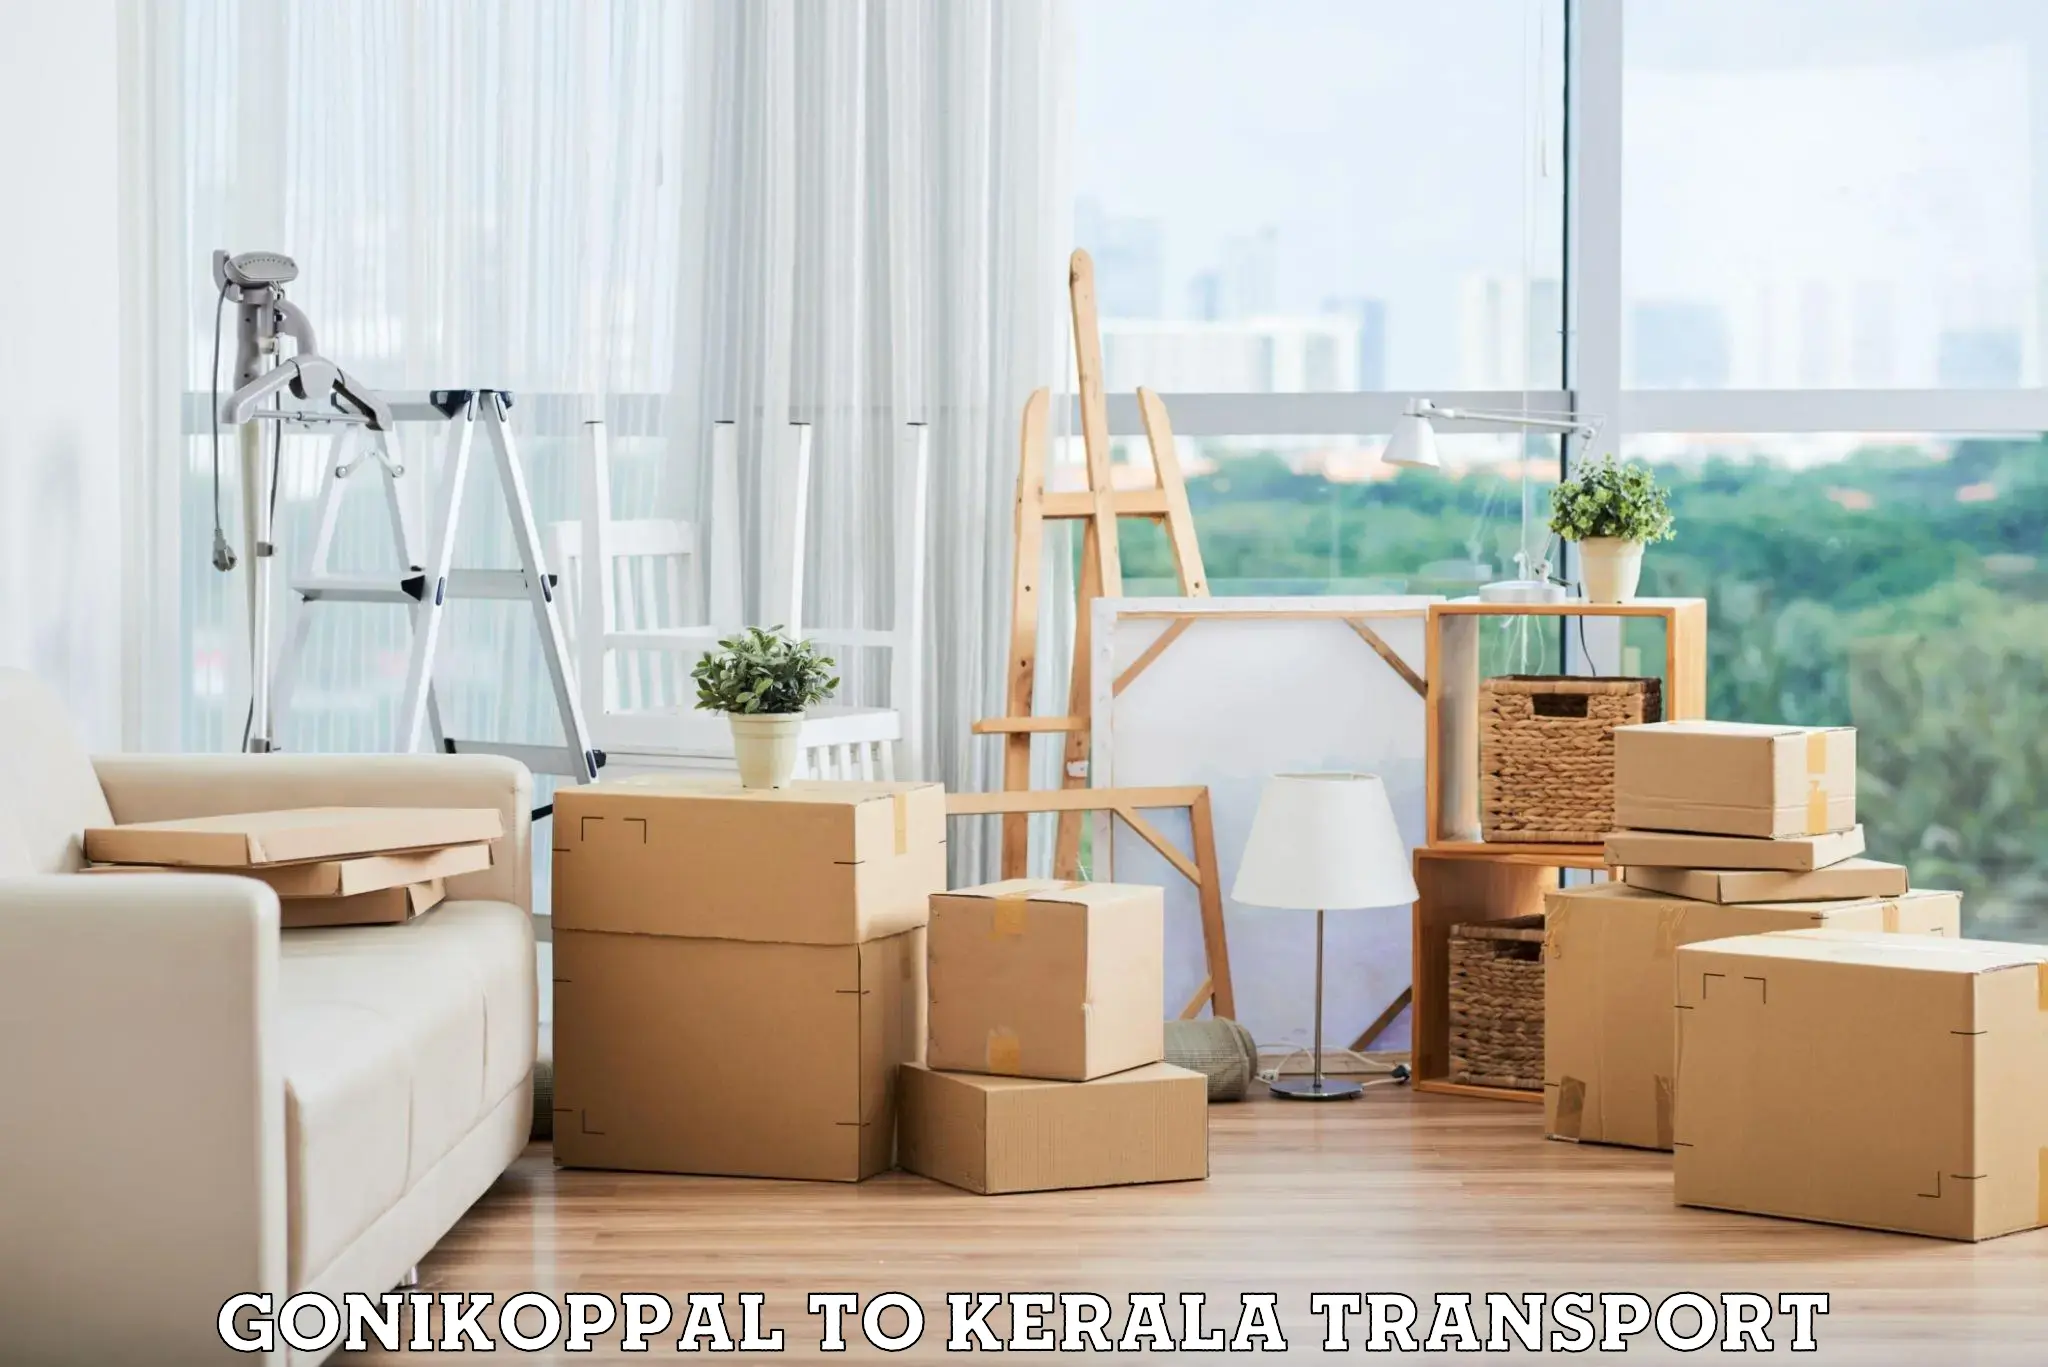 Lorry transport service Gonikoppal to Kallikkad